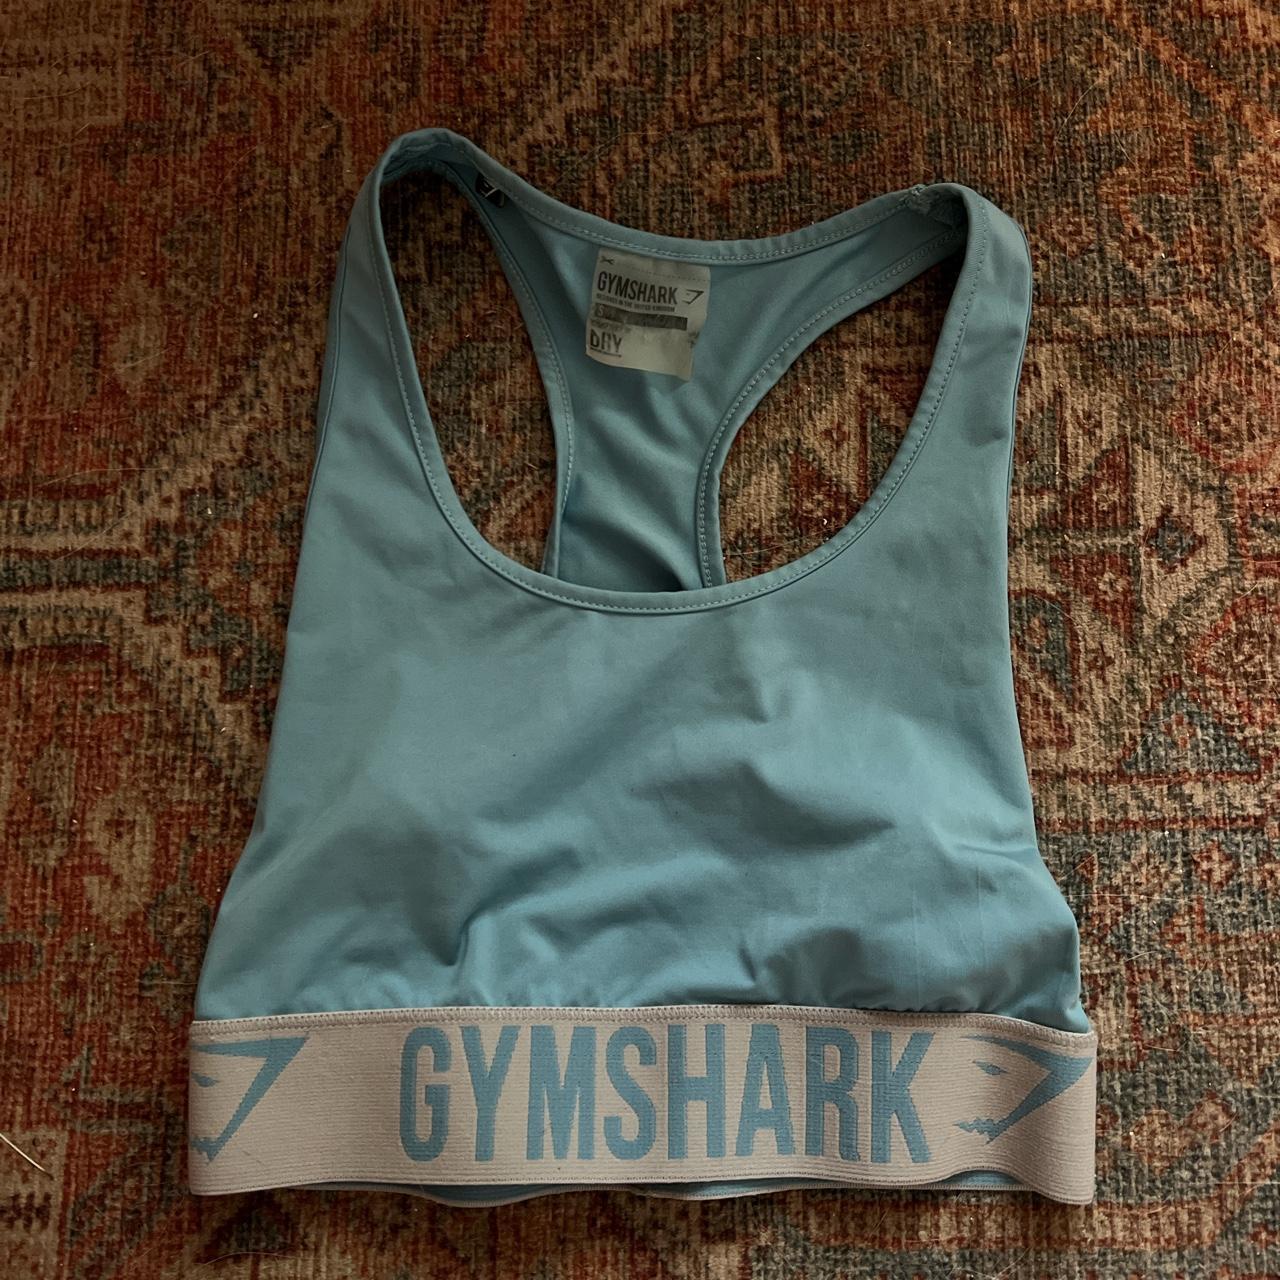 Gym shark sports bra, worn a few times. Minimal wear - Depop